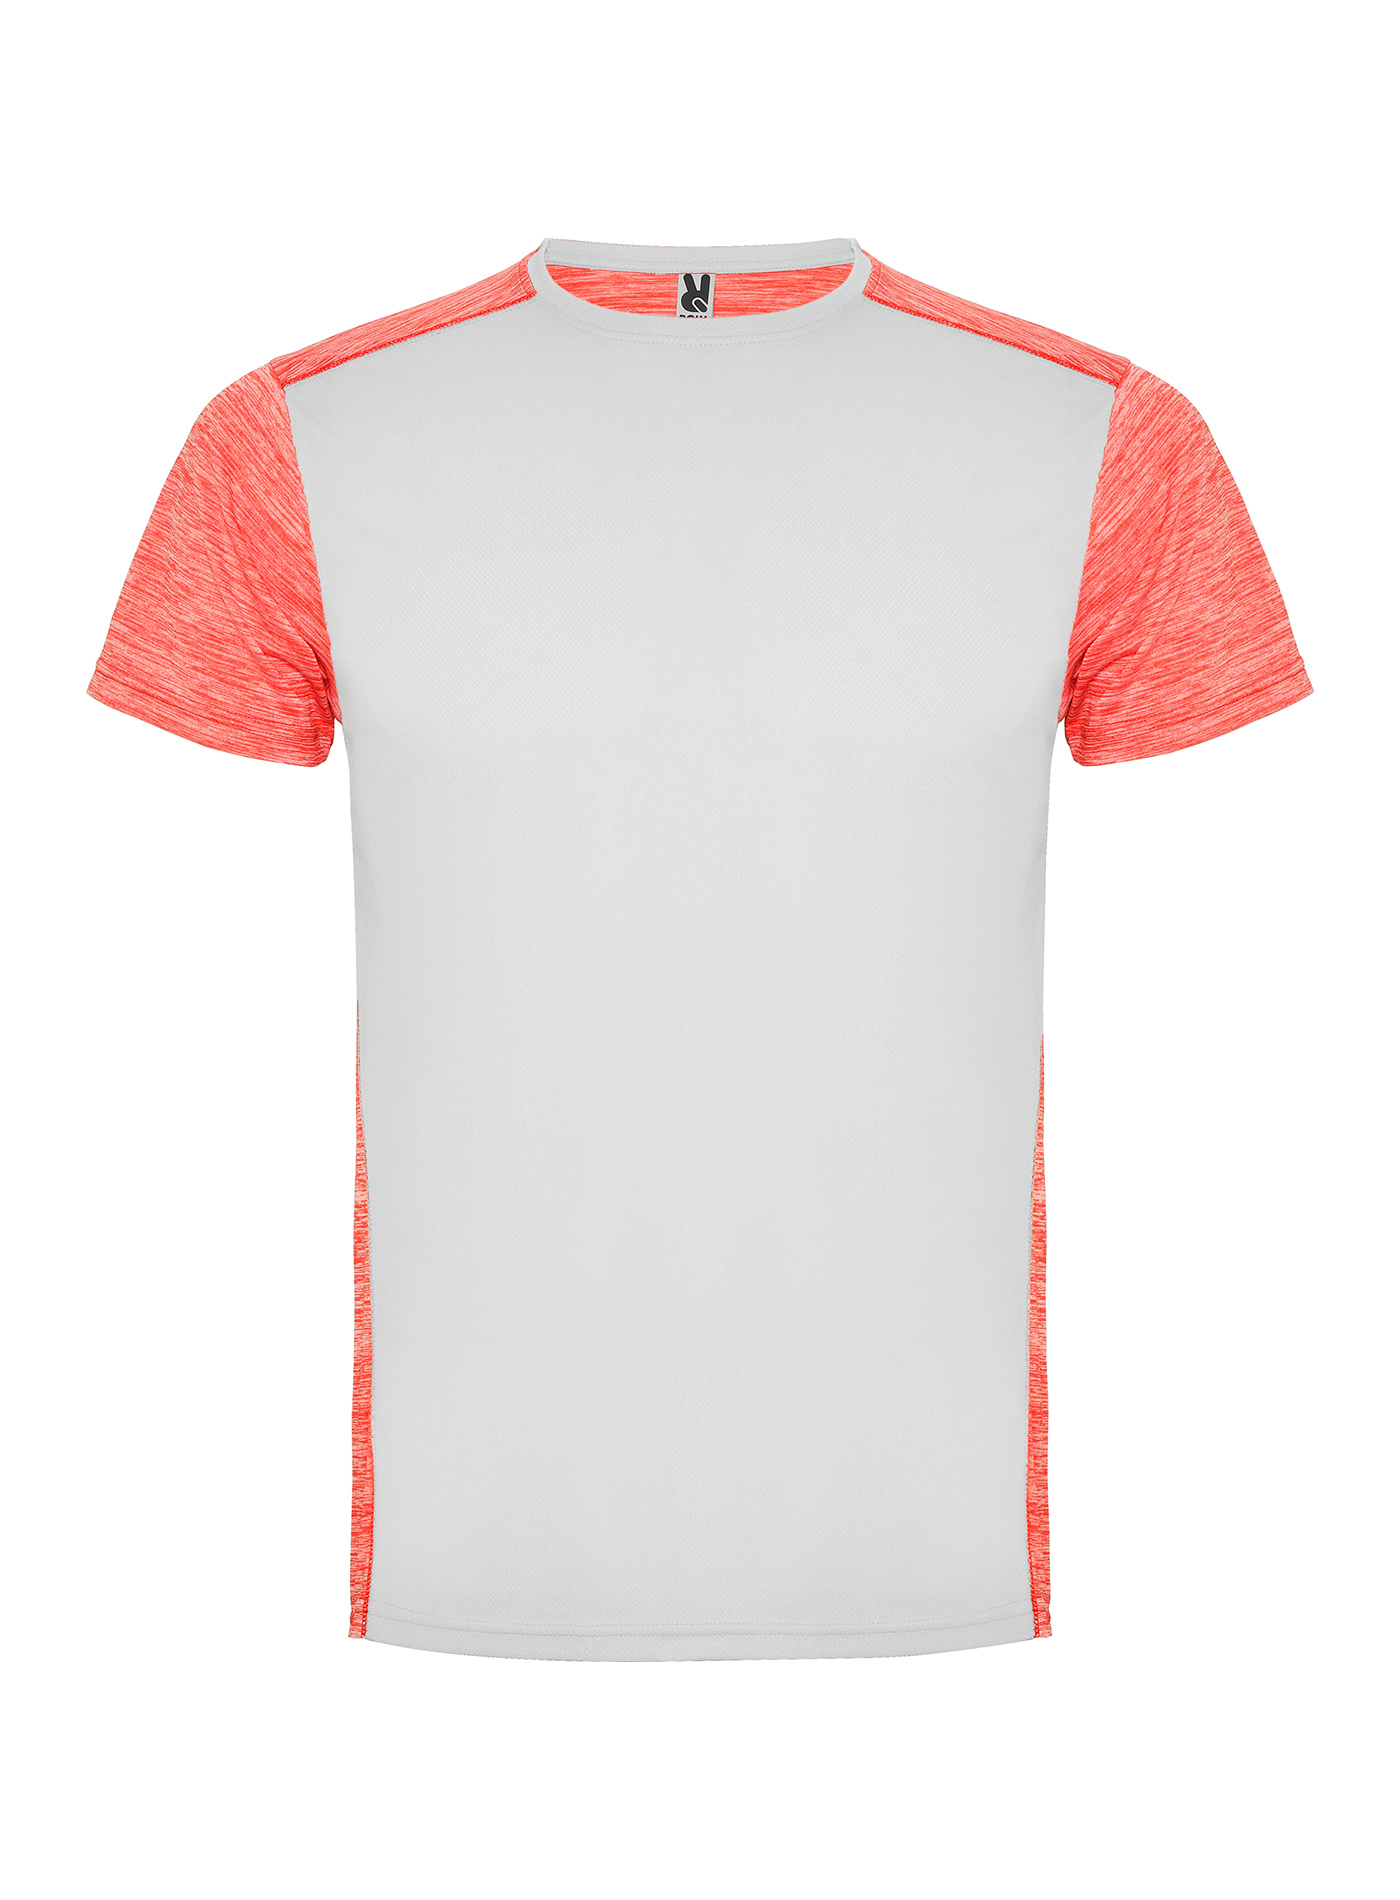 Pánské/Dětské sportovní tričko Roly Zolder - Bílá a korálová L